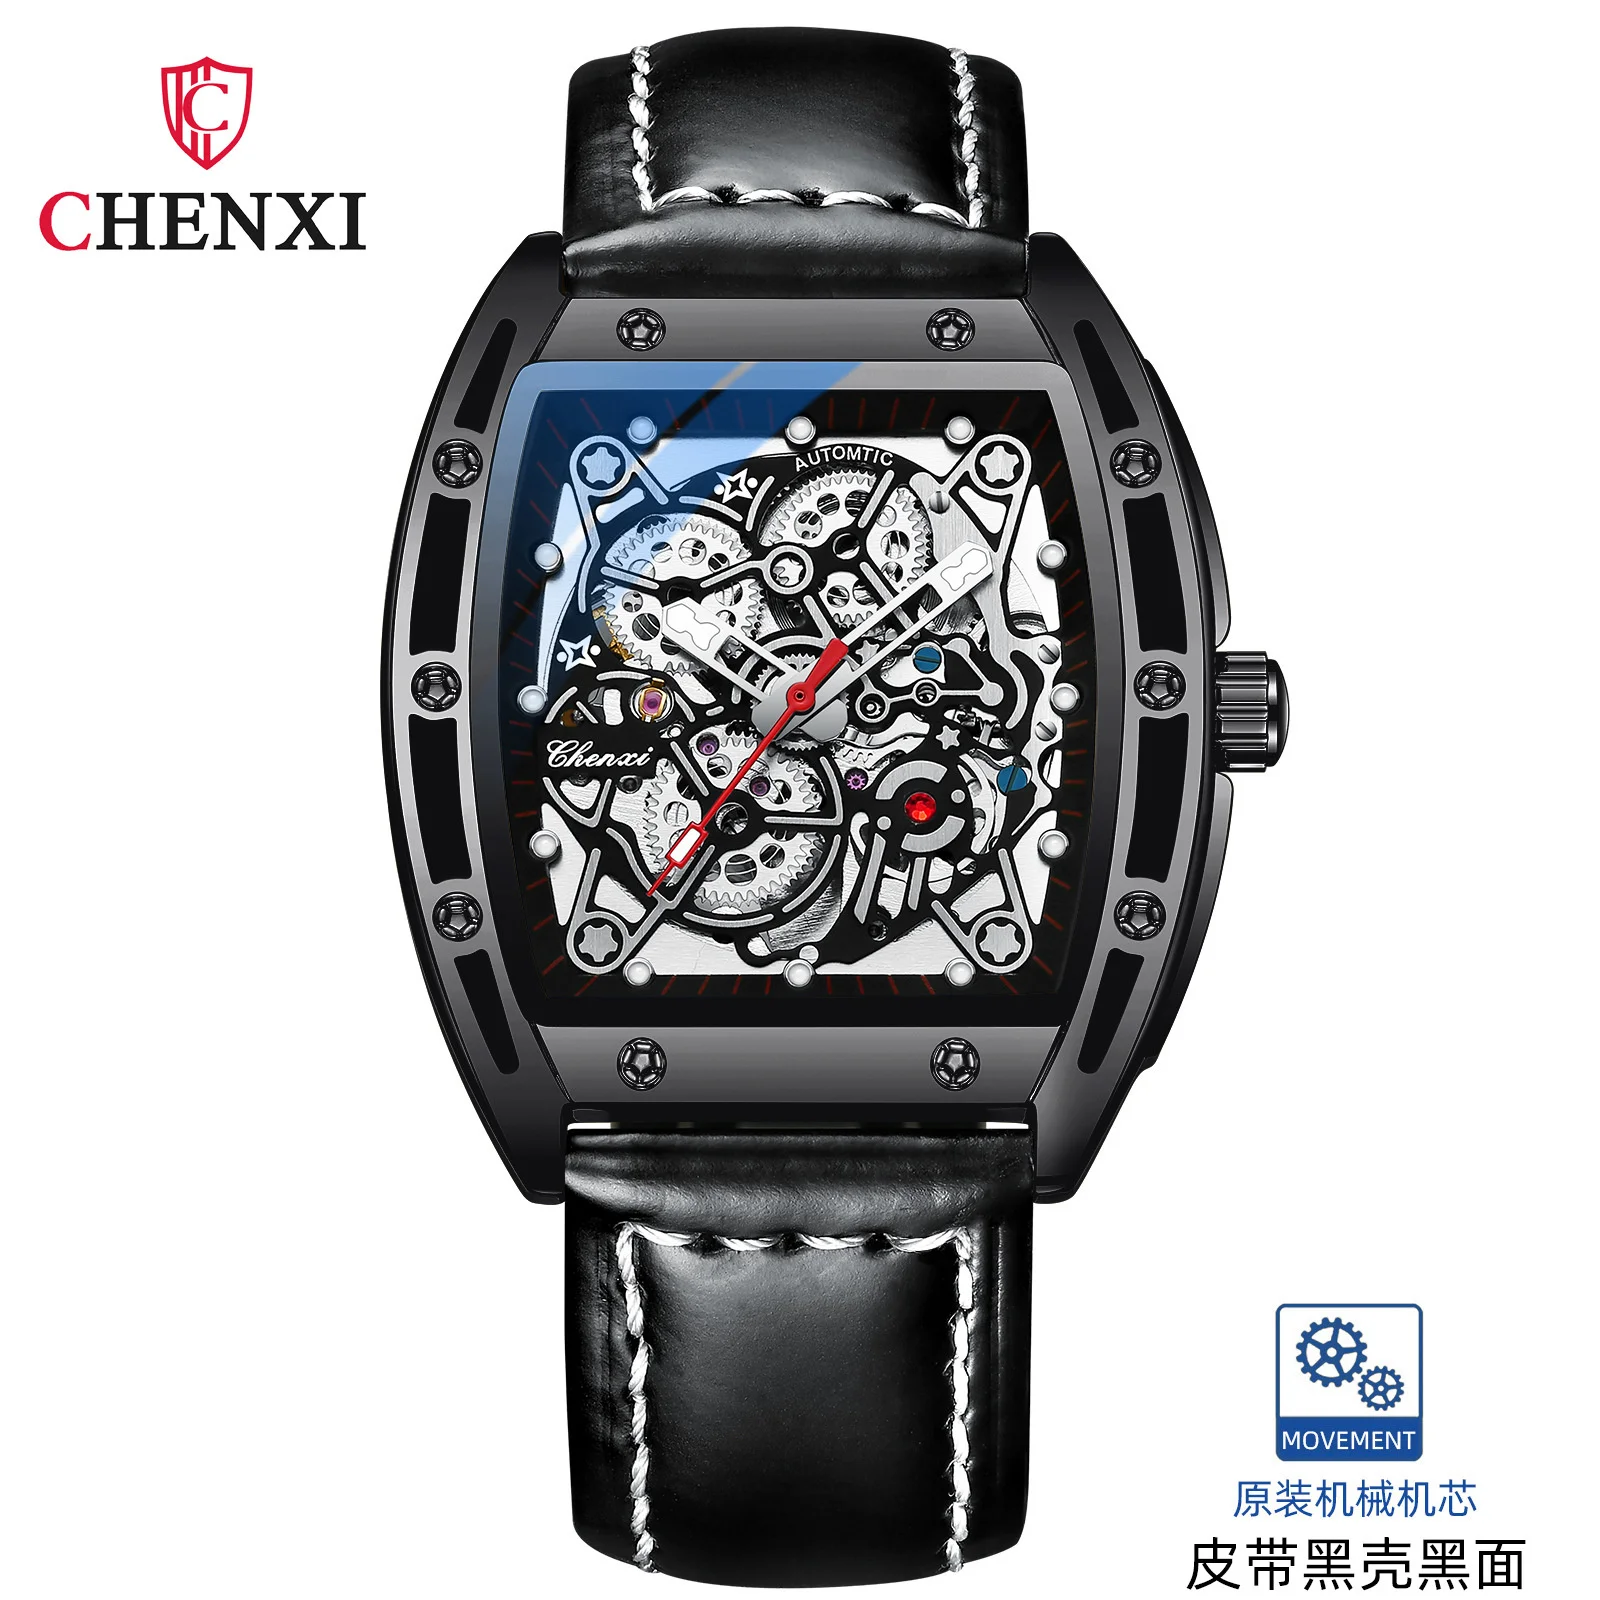 CHENXI 8865 חם מכירה סטיות זכר חלול מכאניים אוטומטיים שעון גברים נירוסטה מפעל שעון יד רלו גבר - 2